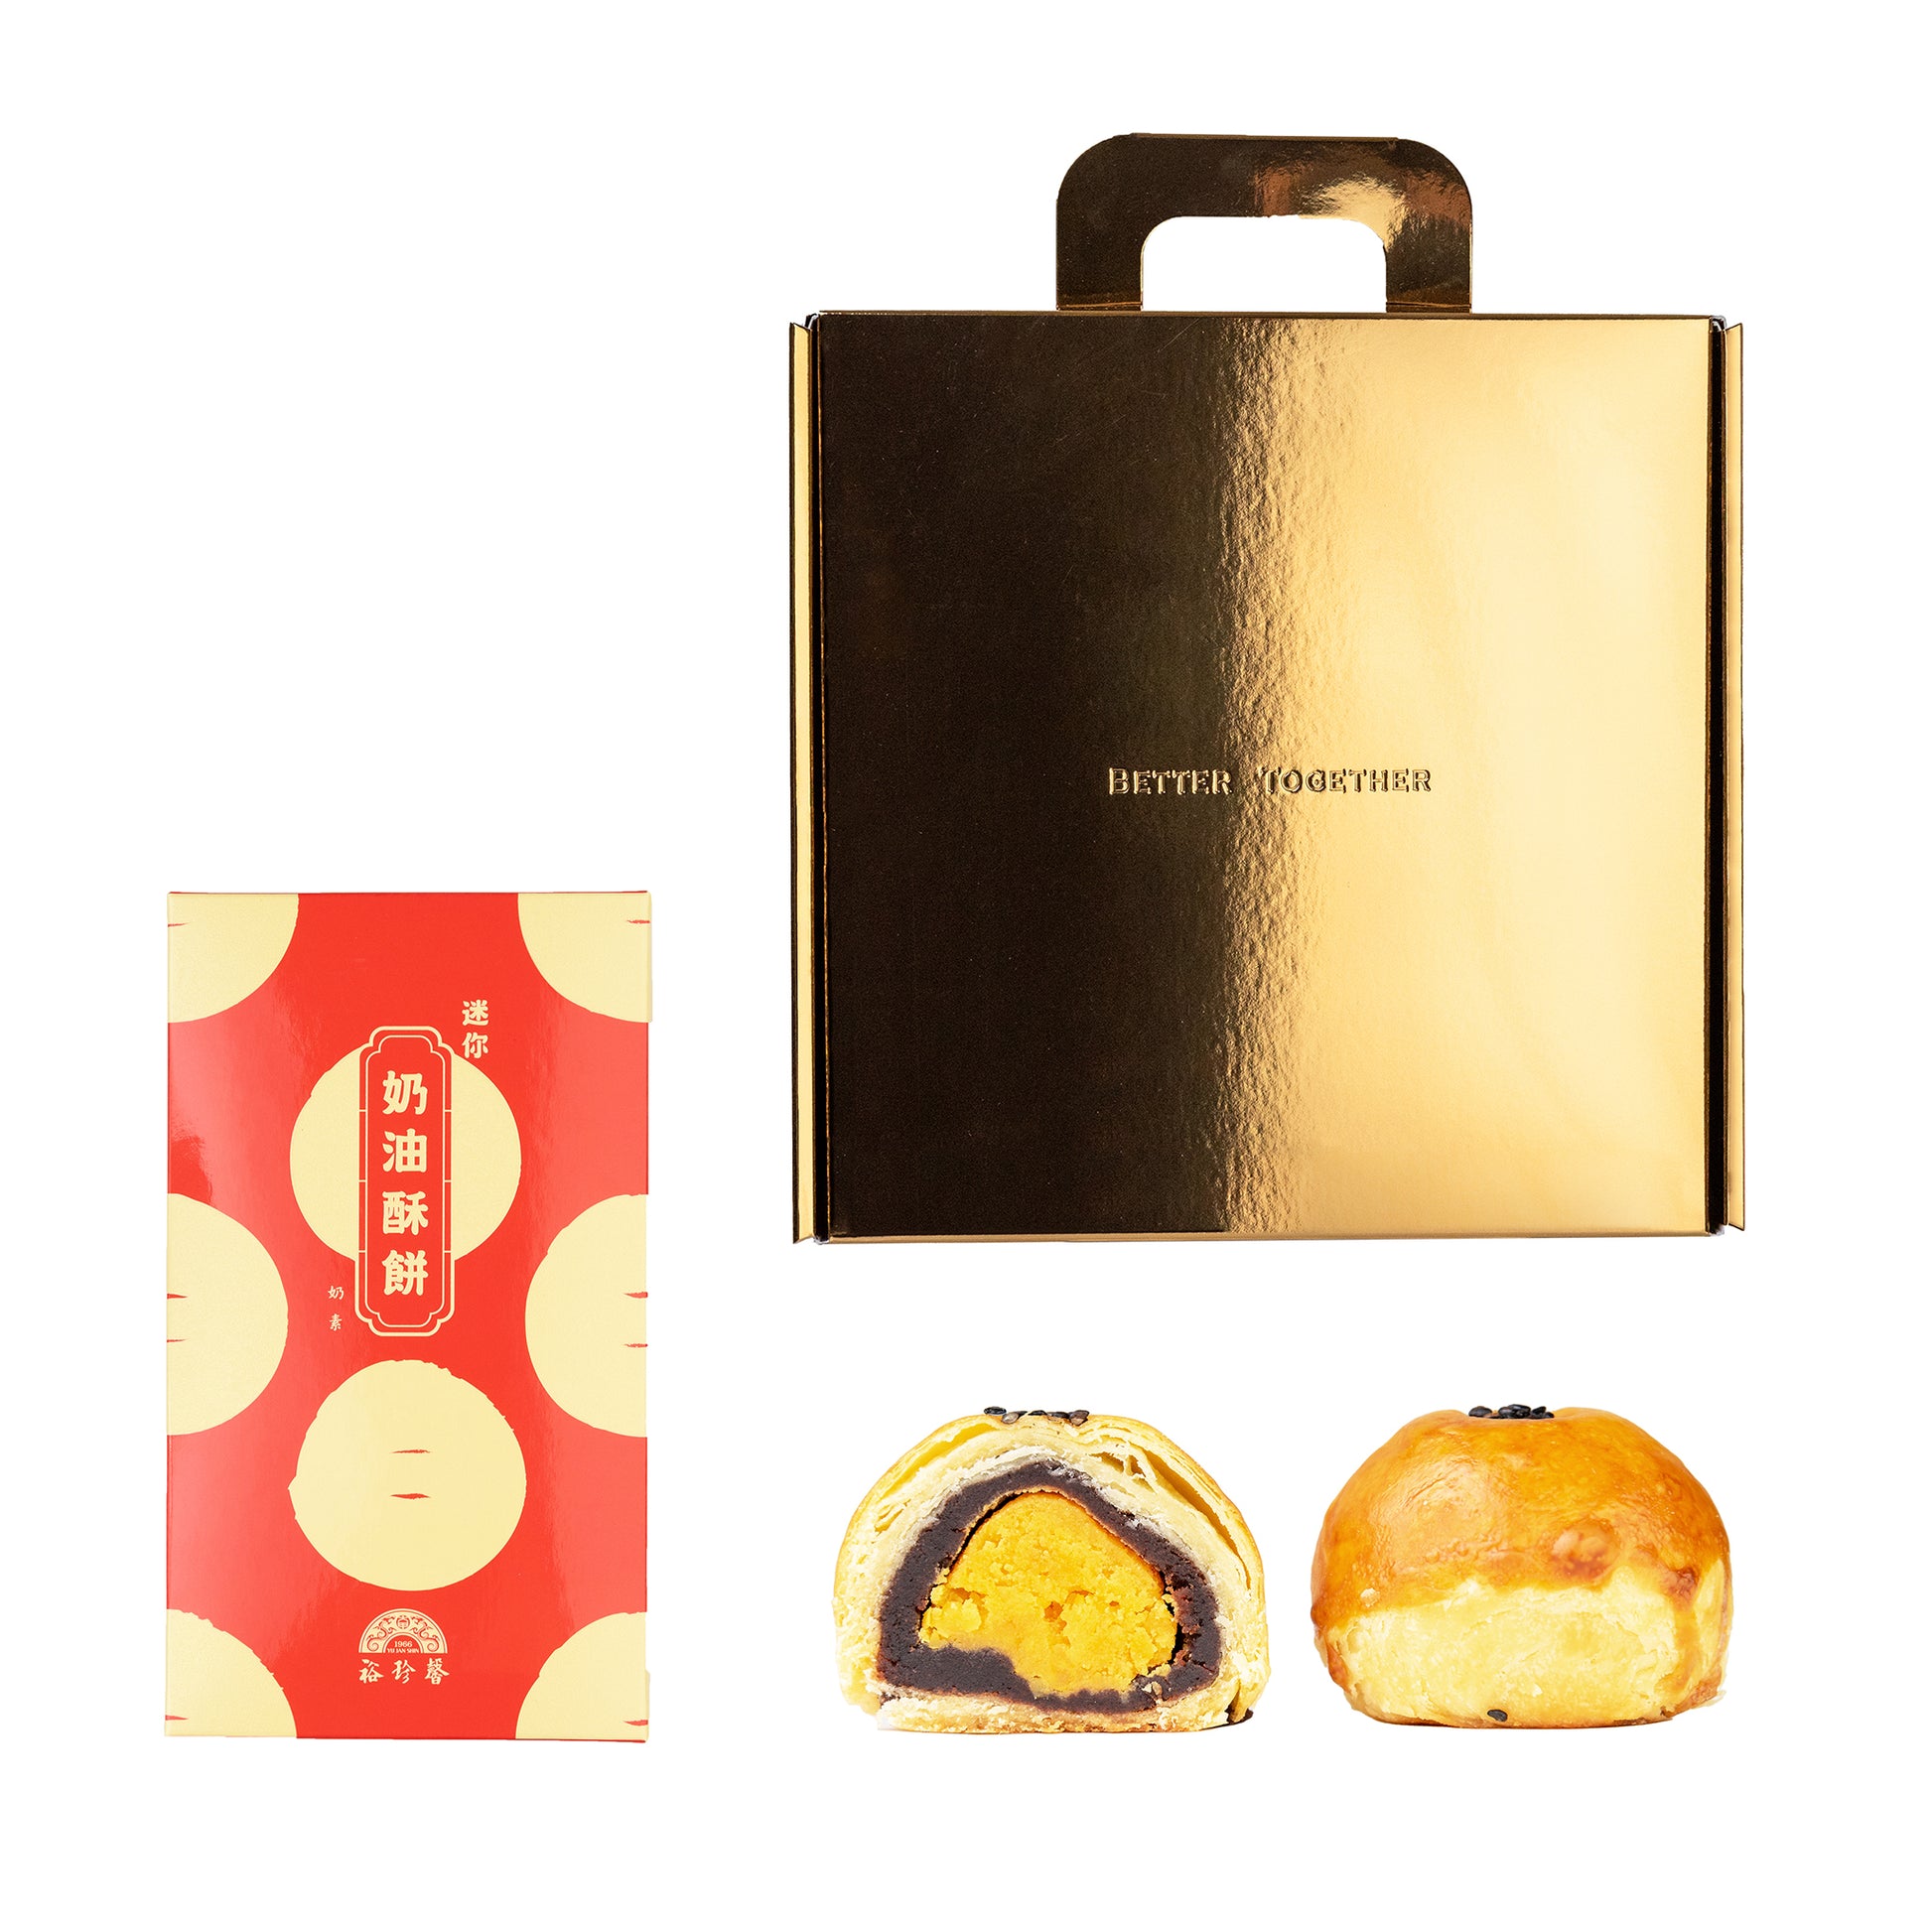 客製化禮盒．企業送禮．勵馨公益蛋黃酥．裕珍馨奶油酥餅．過年中秋端午三節